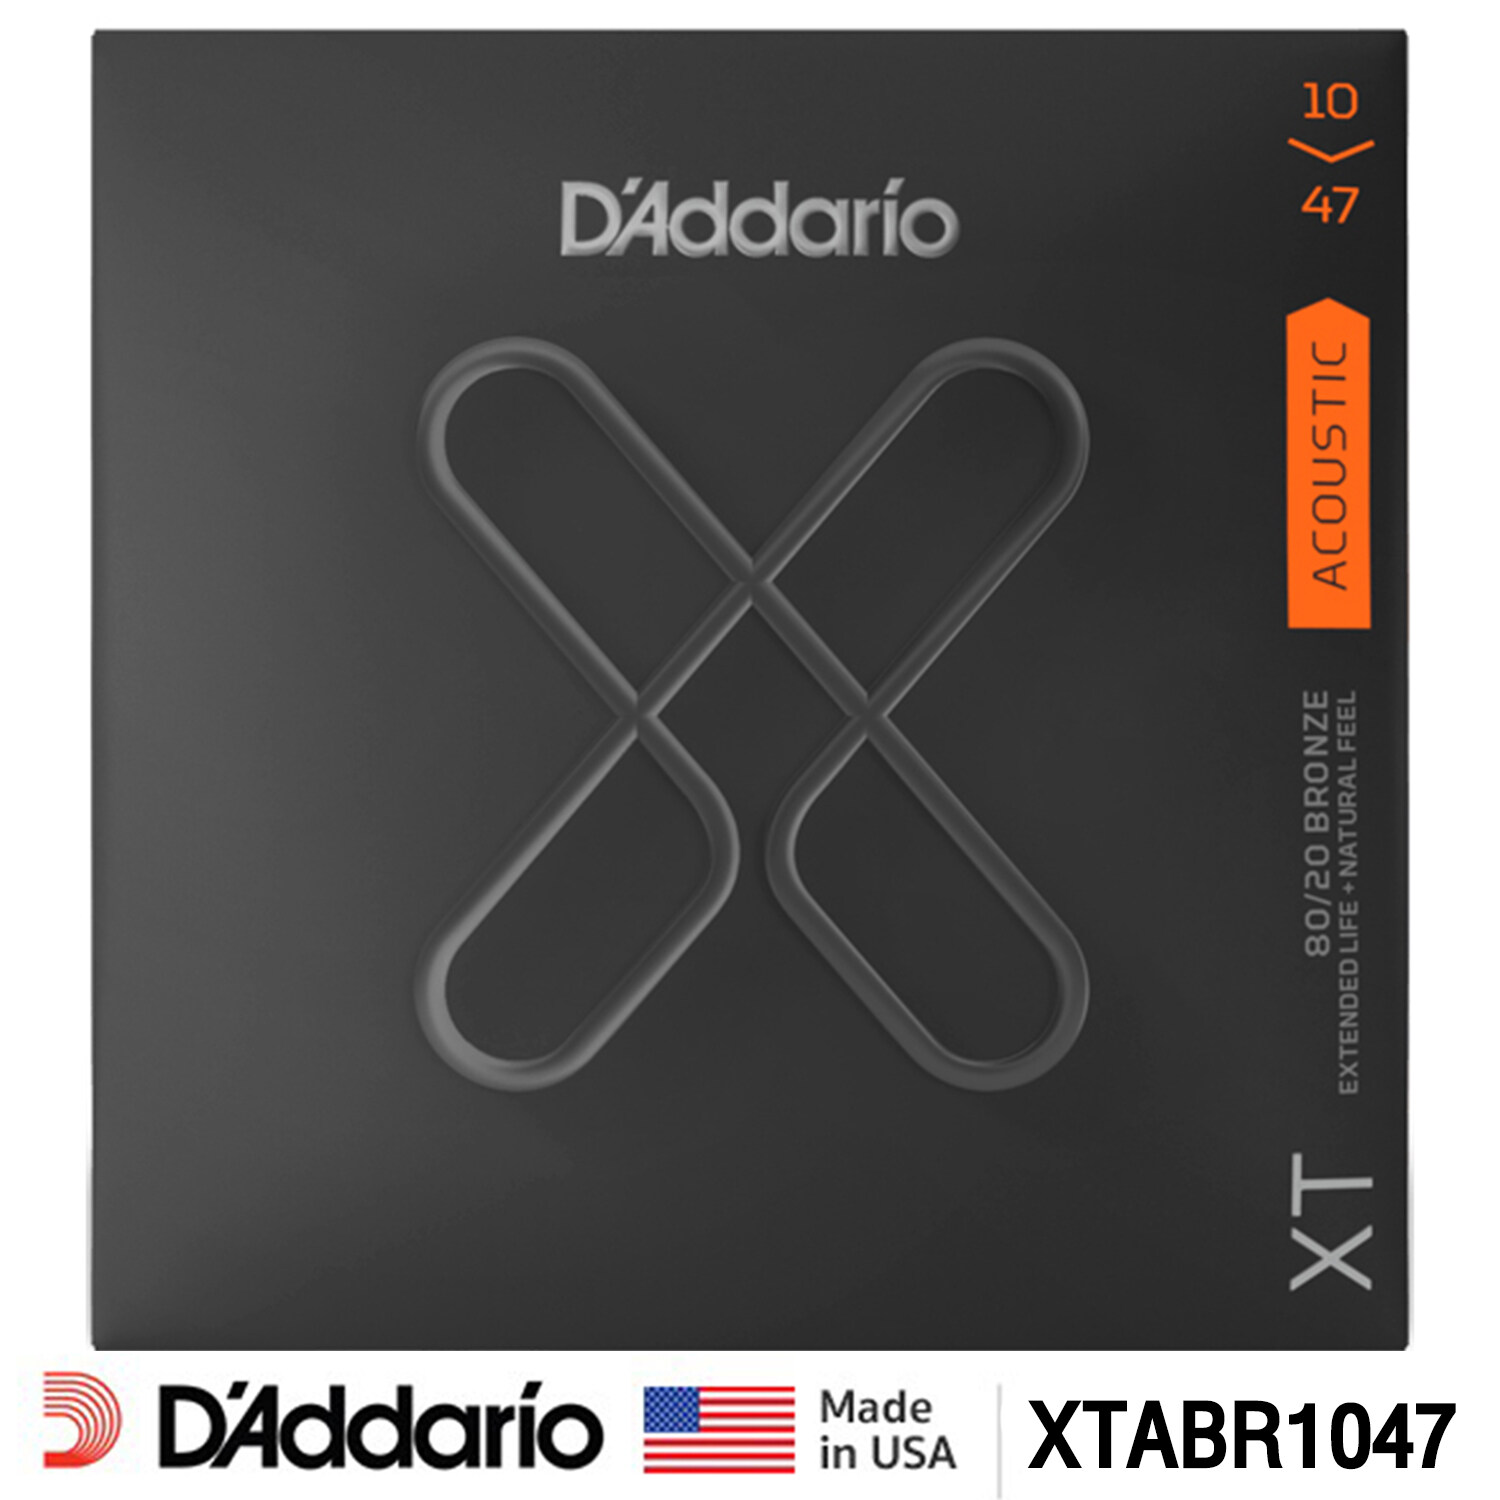 D'Addario XTABR เบอร์ 10 / XTABR1047